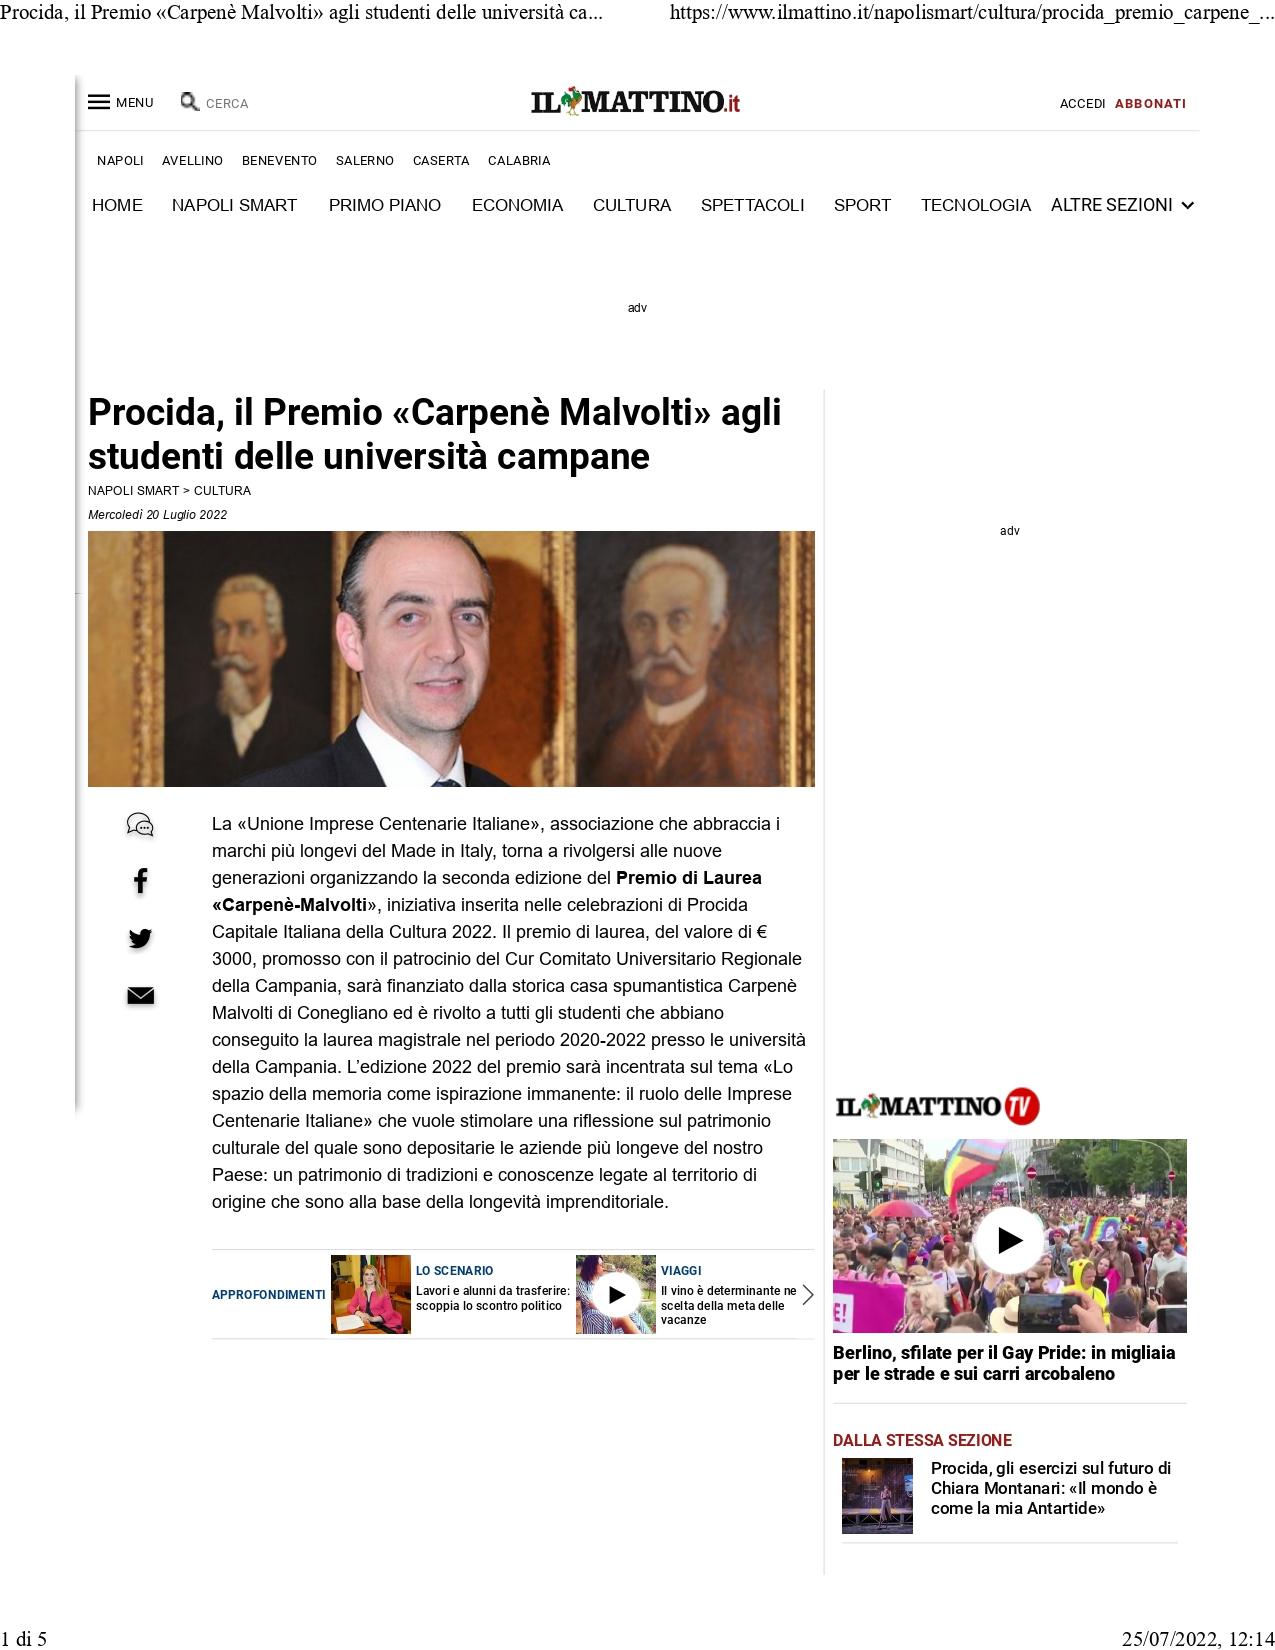 Il Mattino Procida il Premio Carpenè Malvolti agli studenti delle università campane 20 luglio 2022 1 page 0001